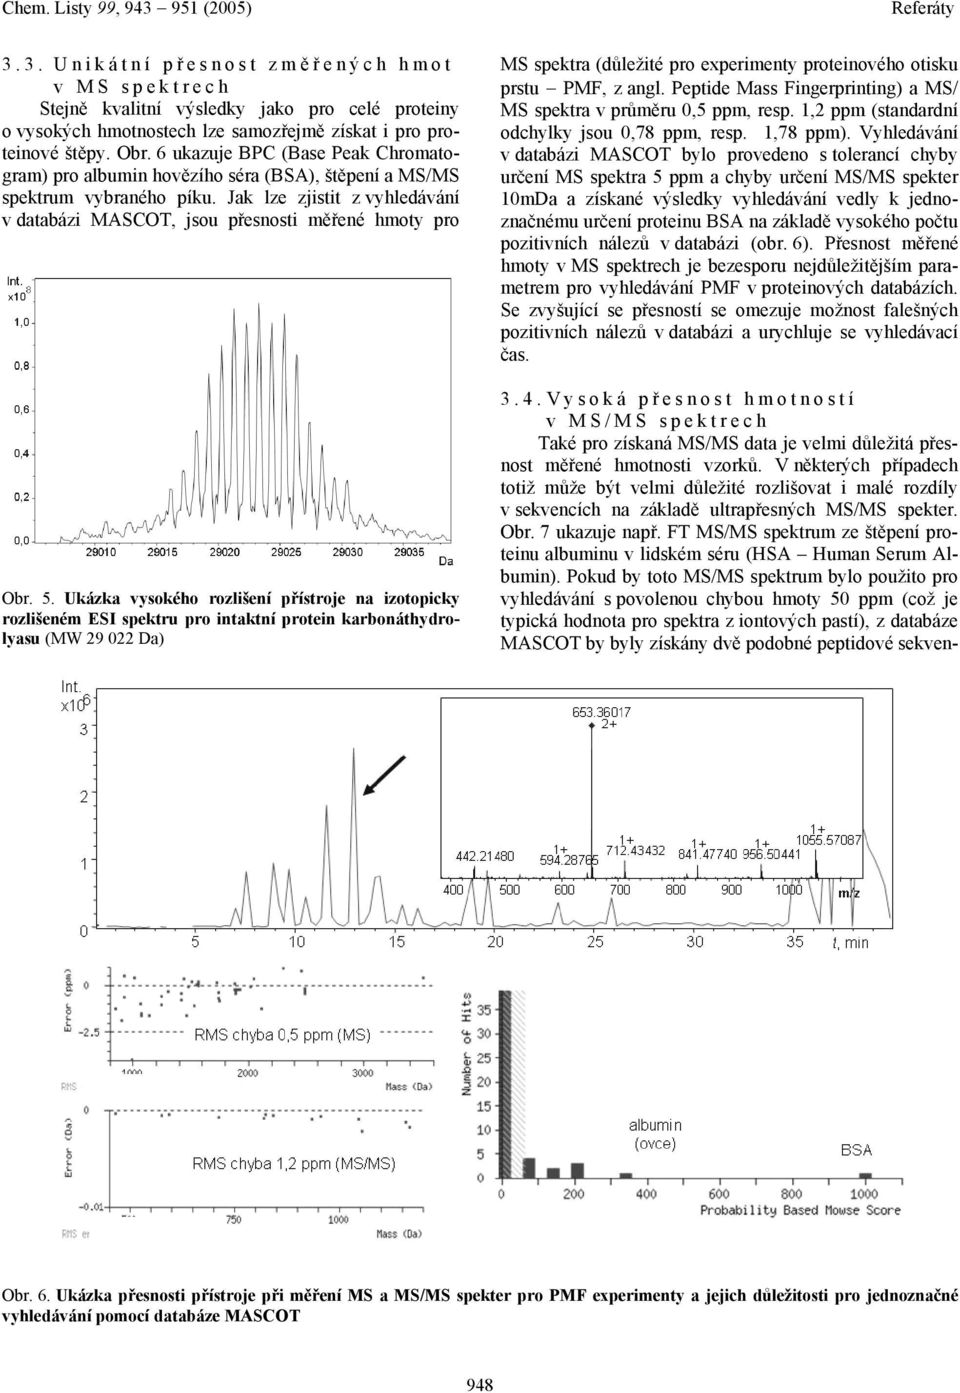 5. Ukázka vysokého rozlišení přístroje na izotopicky rozlišeném ESI spektru pro intaktní protein karbonáthydrolyasu (MW 29 022 Da) MS spektra (důležité pro experimenty proteinového otisku prstu PMF,